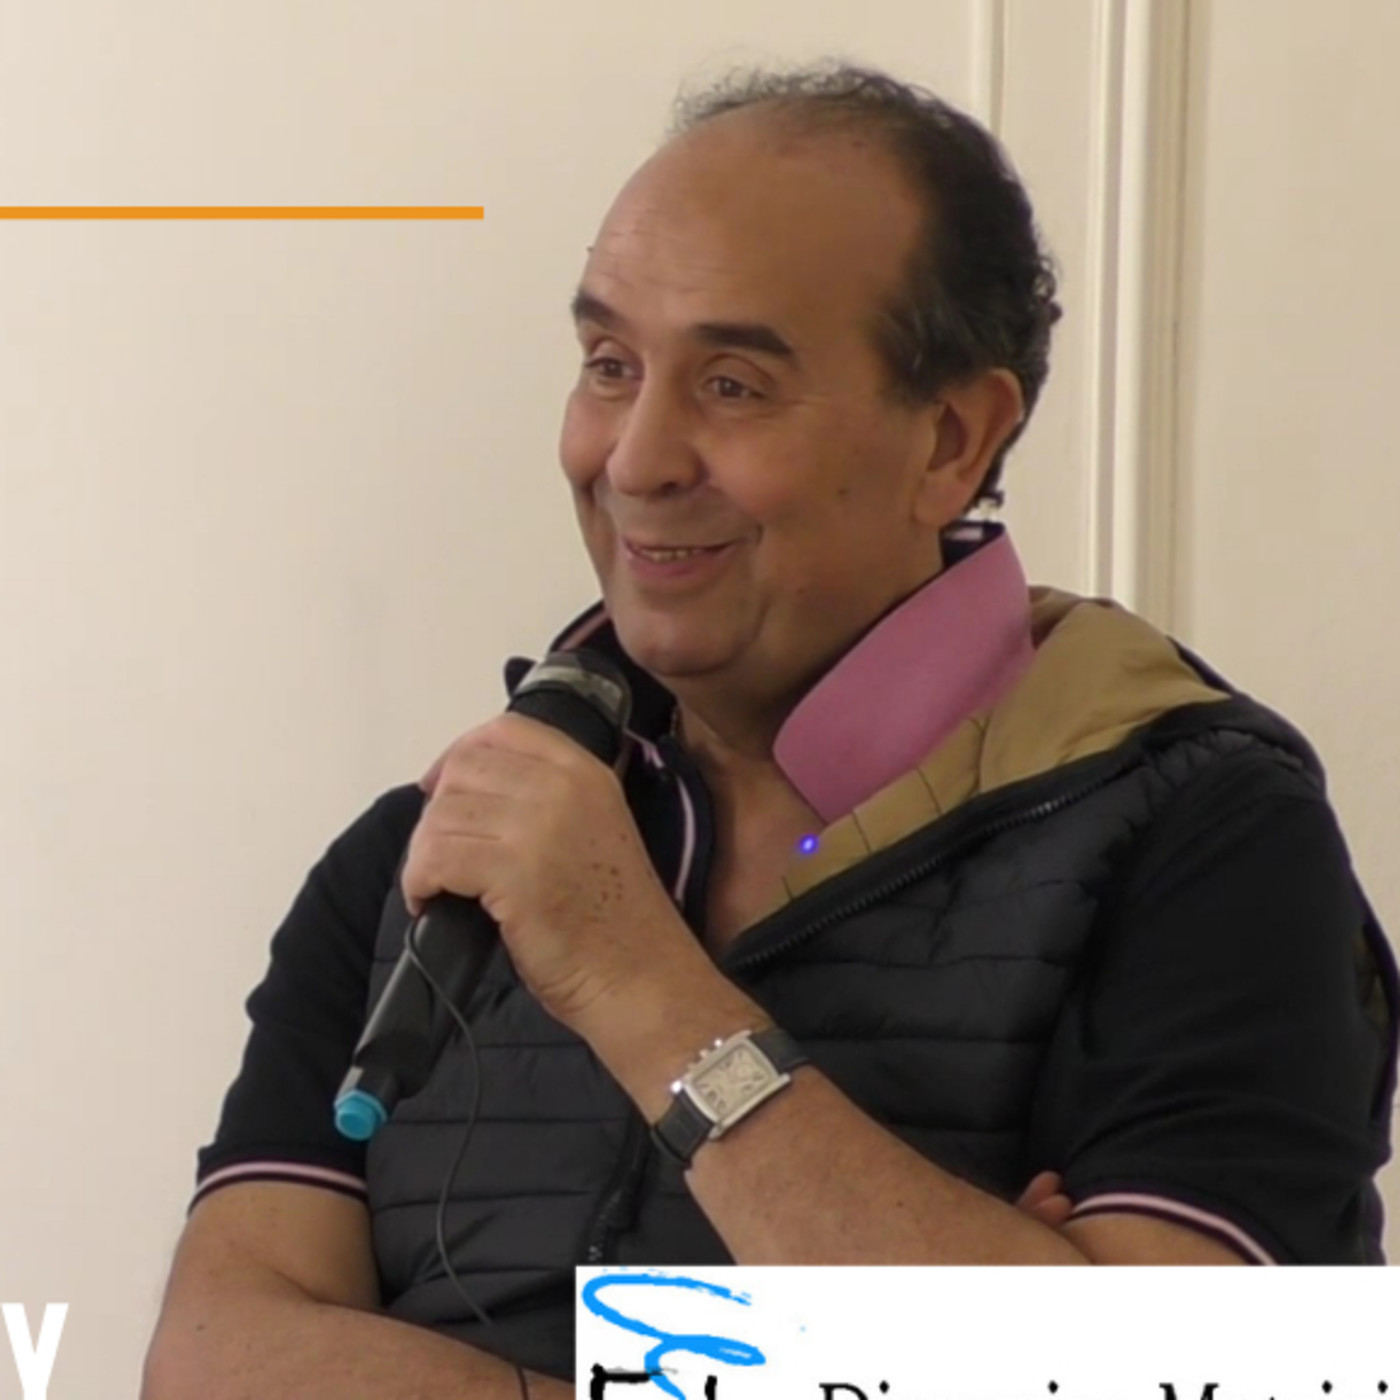 La Revolución Cuántica al servicio de la Salud con profesor Aziz El Amrani Joutey 4 Parte